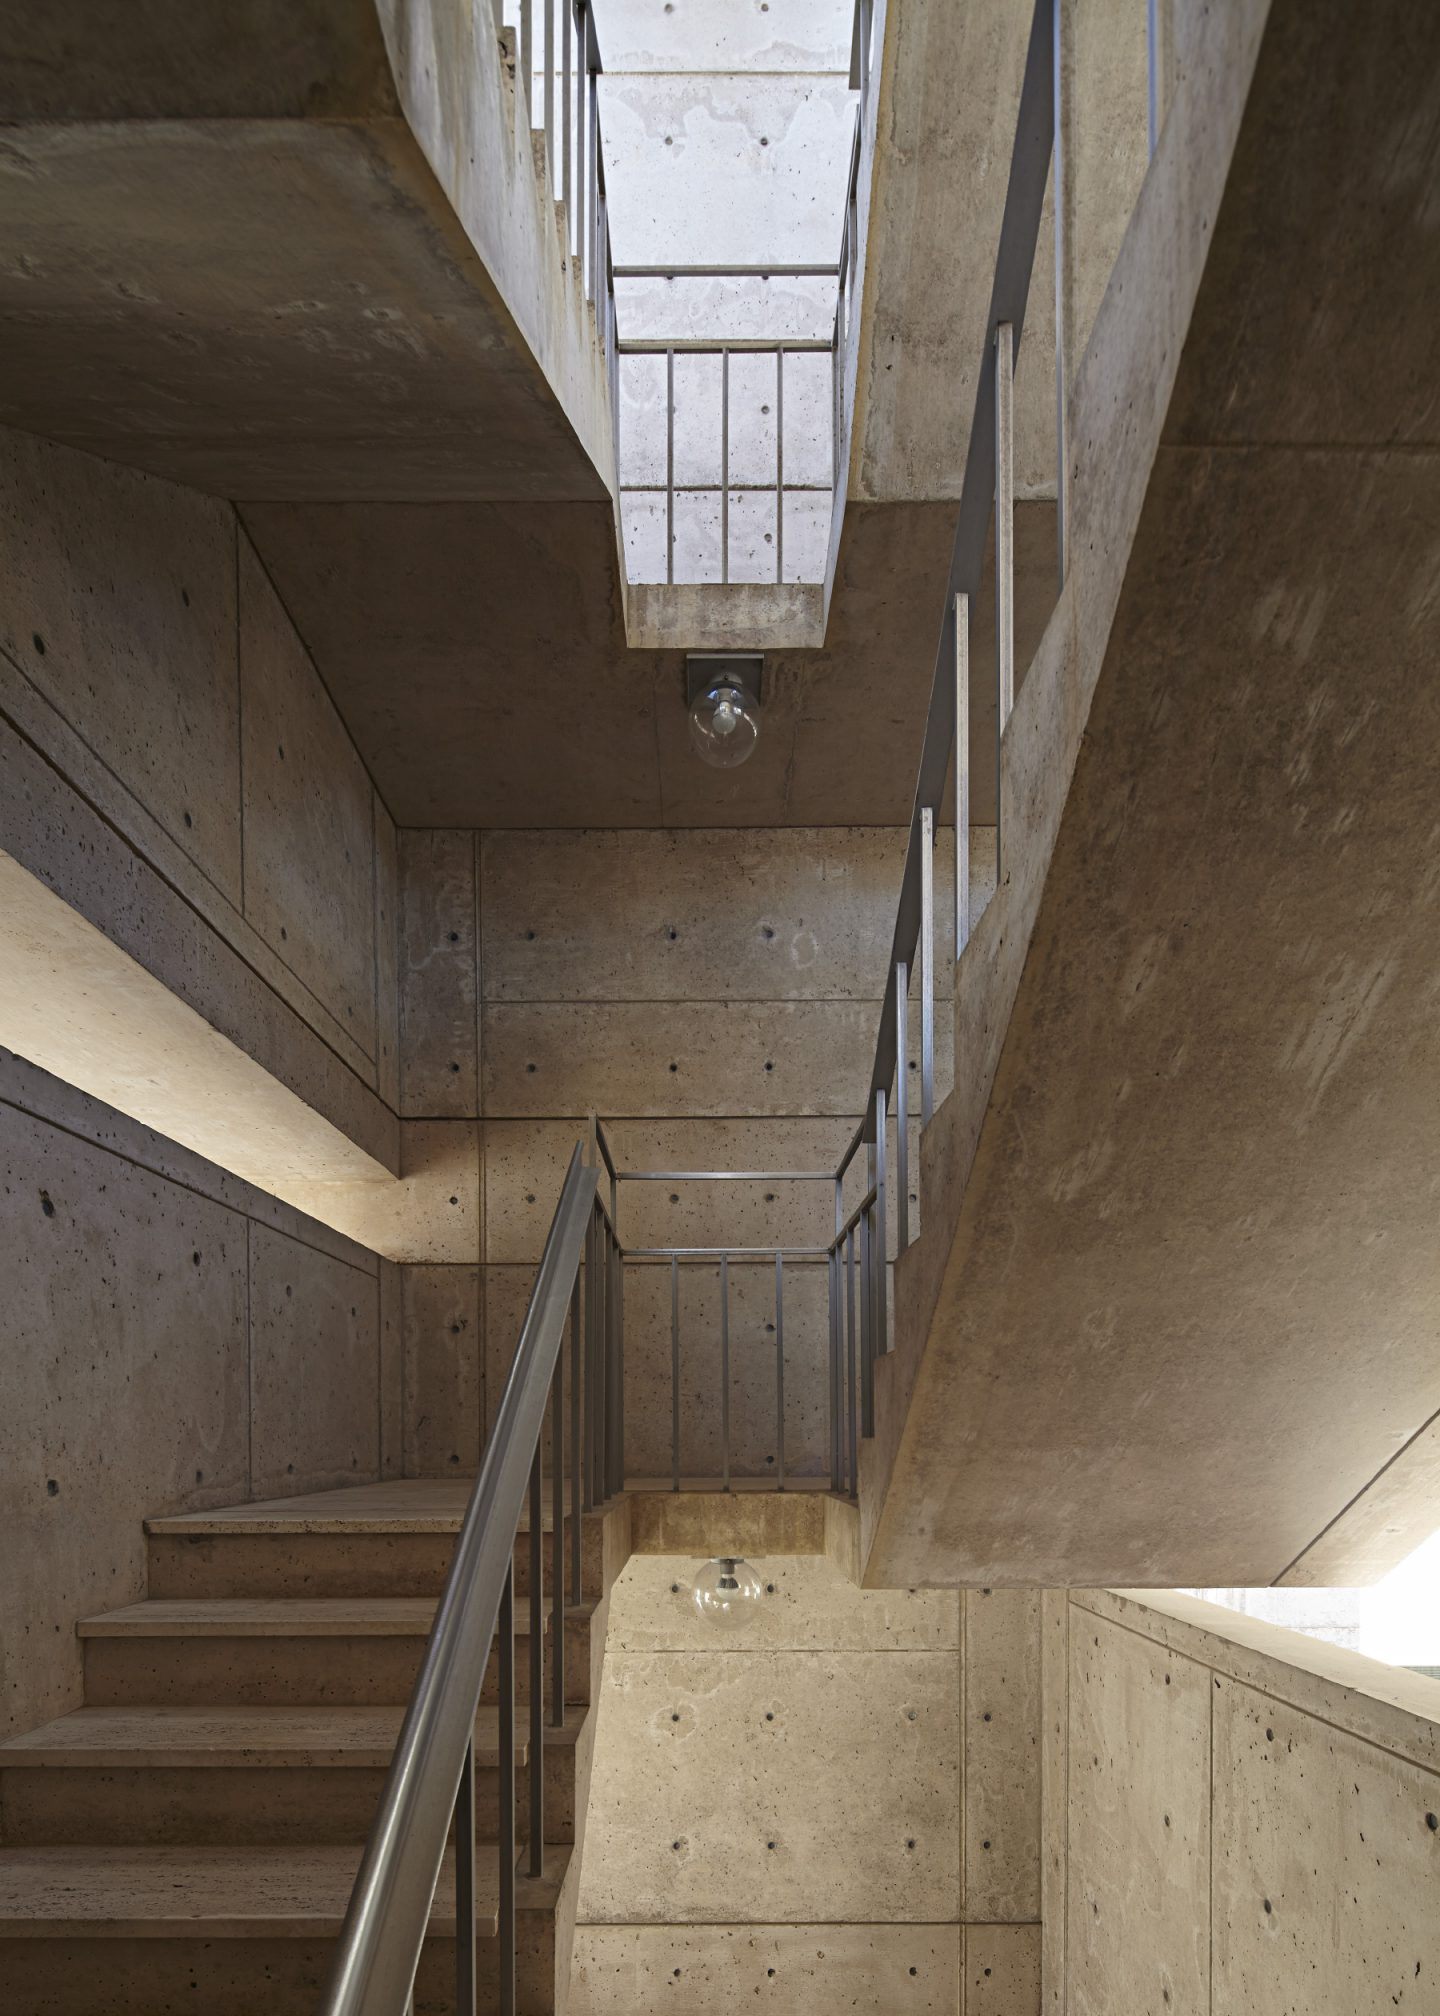 Salk institute interior  Interior, Minimalism interior, Interior  architecture